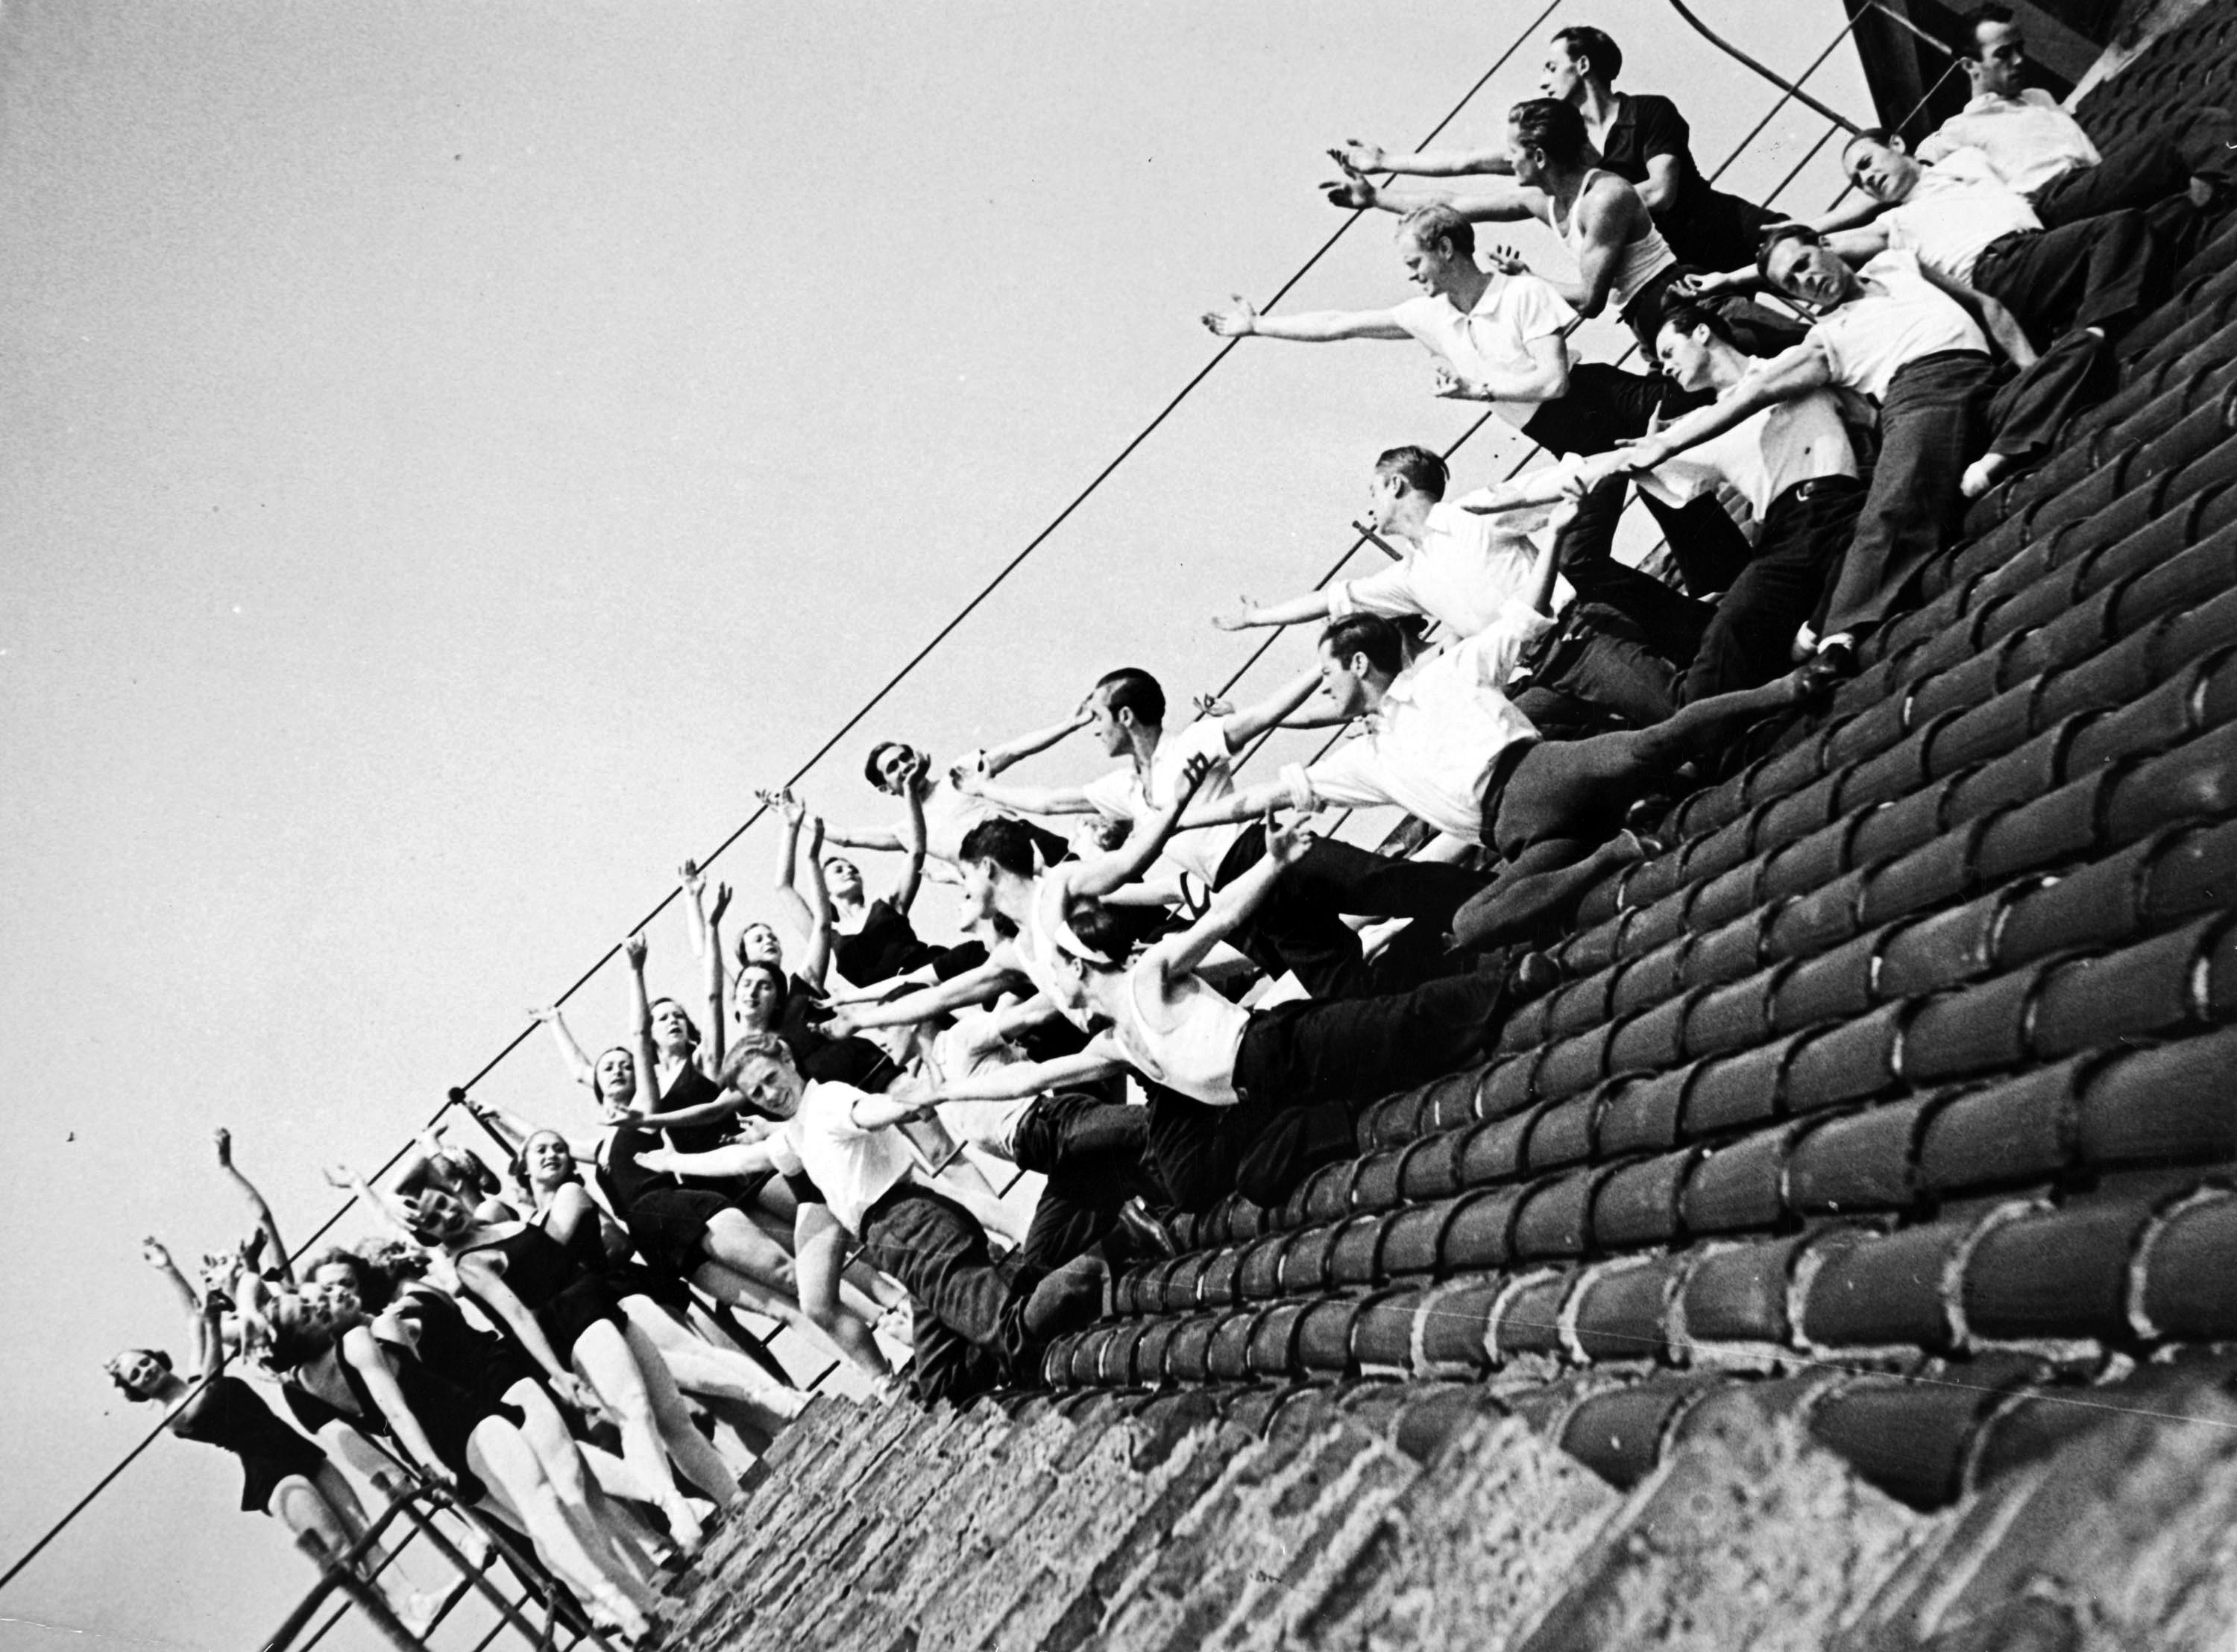 Cuerpo de baile de los Ballets Russes de Monte Carlo sobre el tejado del Gran Teatro del Liceo, hacia 1935. Fotografía de Compal (Compte i Palatchi). © Museu Nacional d’Art de Catalunya, Barcelona.